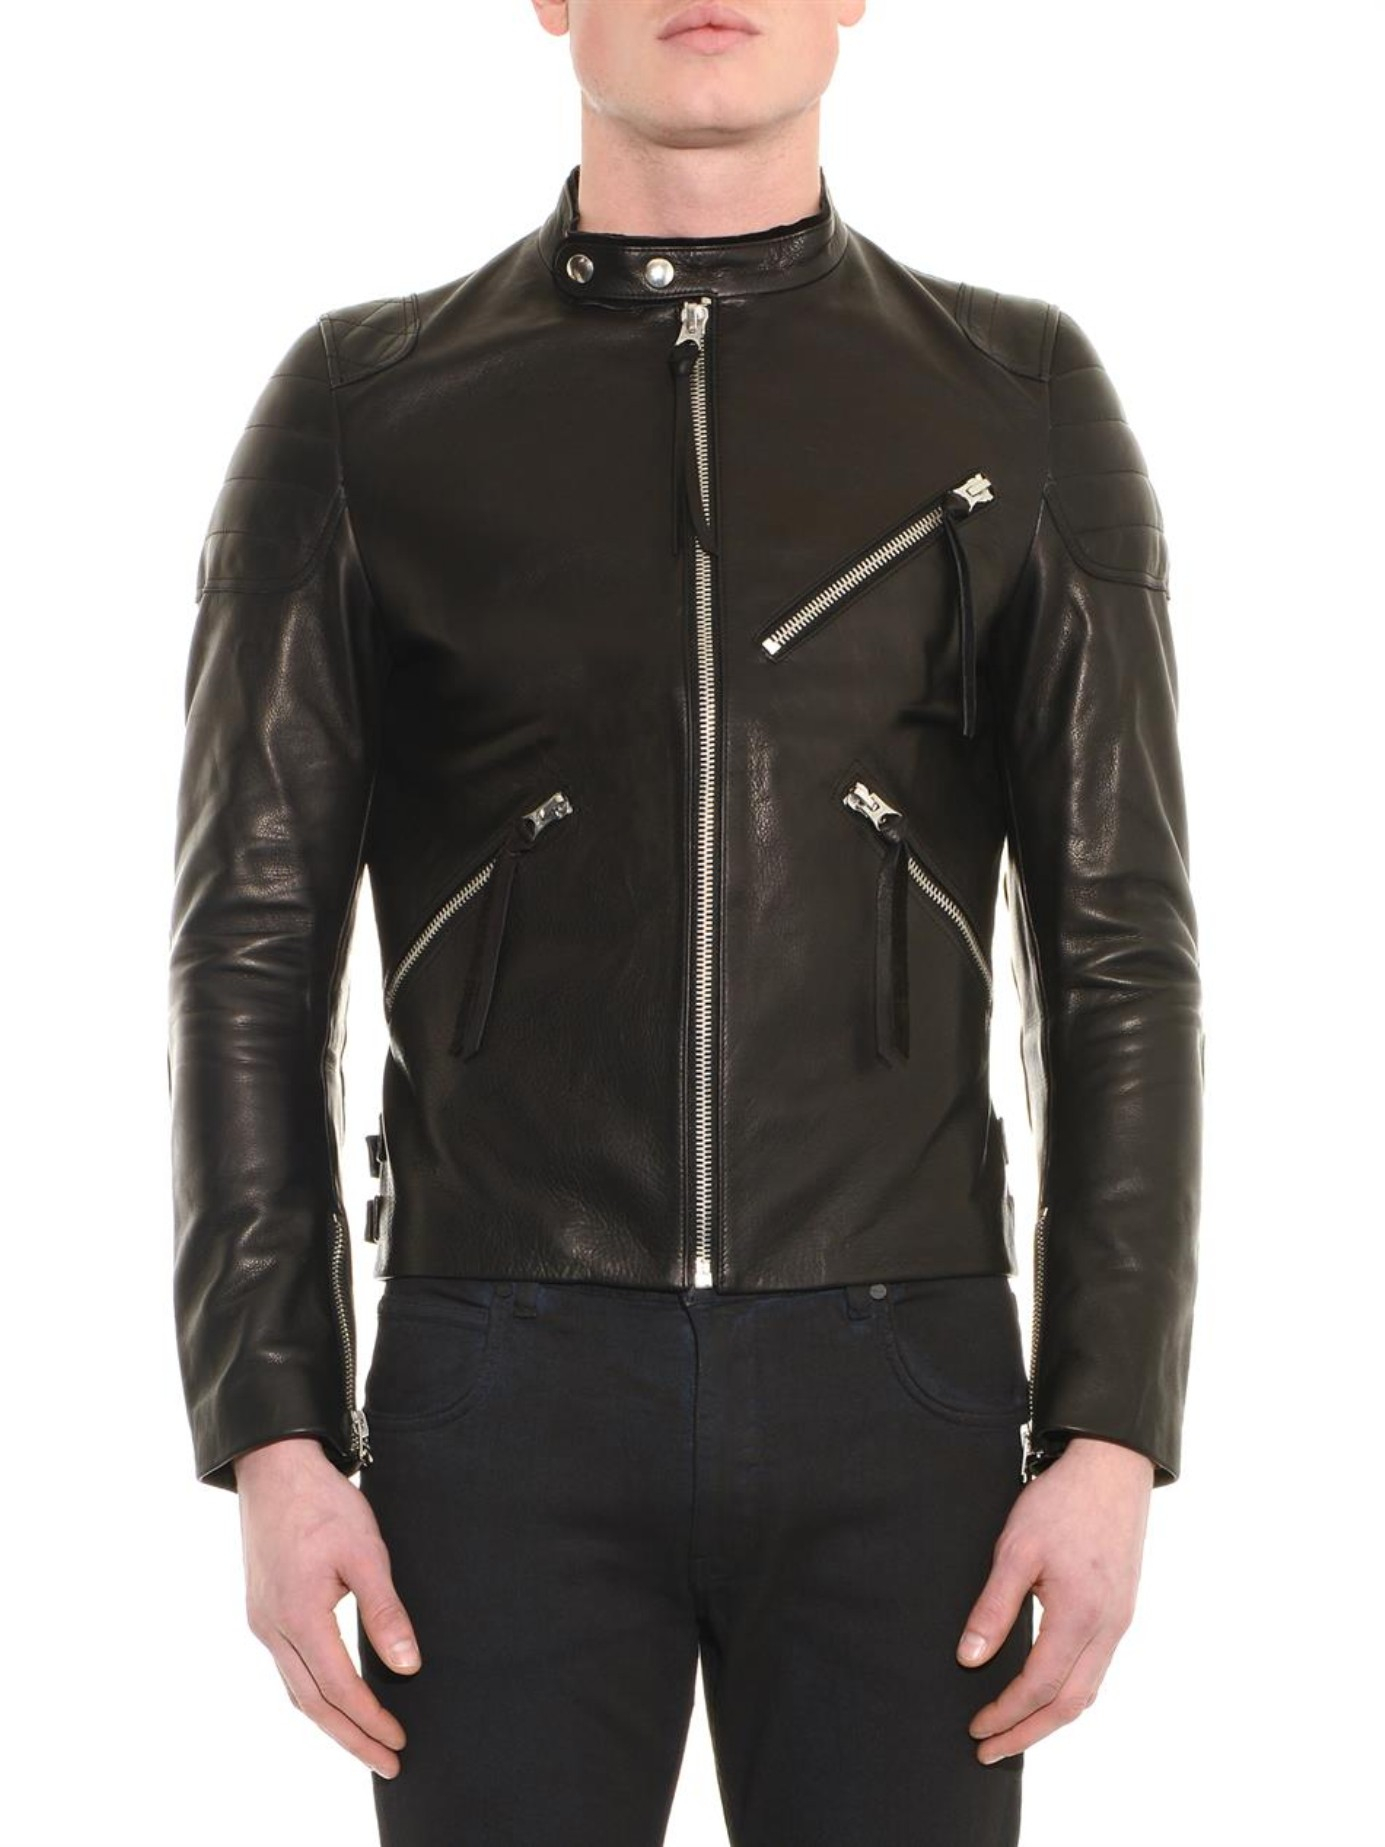 Acne Studios Oliver Leather Jacket in Black for Men - Lyst